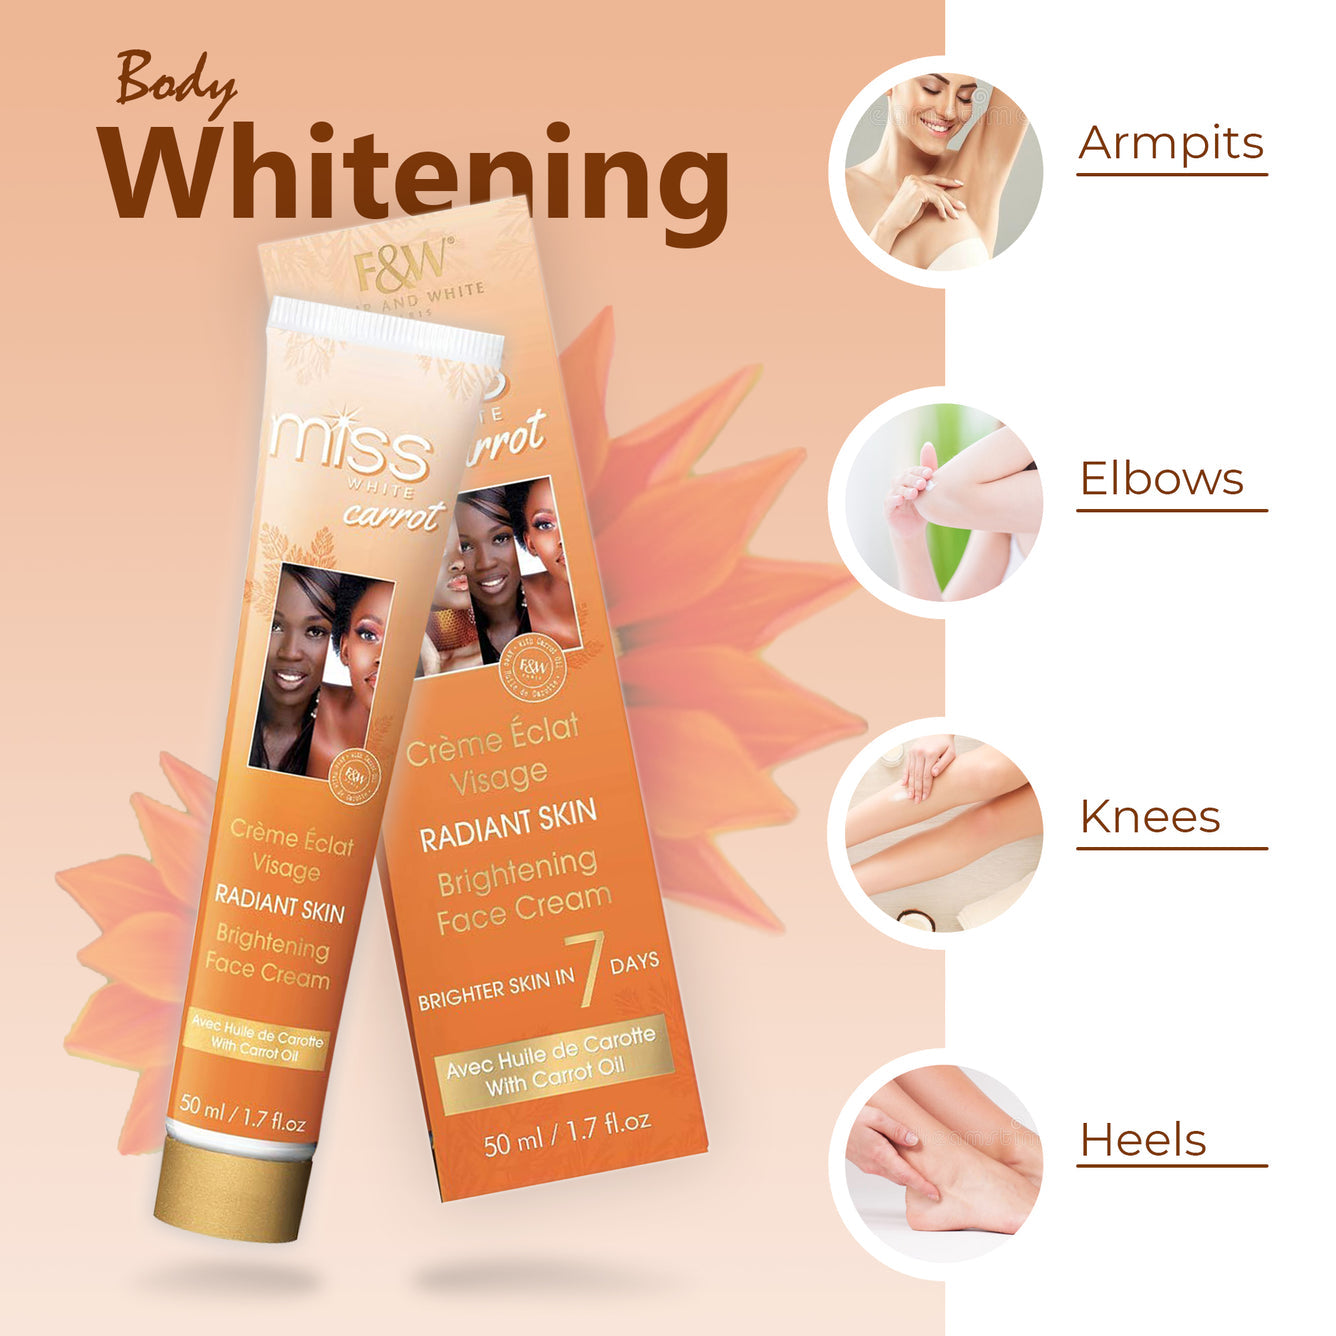 Fair and White Miss White Carrot Brightening Face Cream - 1.7 Fl oz / 50 ml, whit Carrot Oil